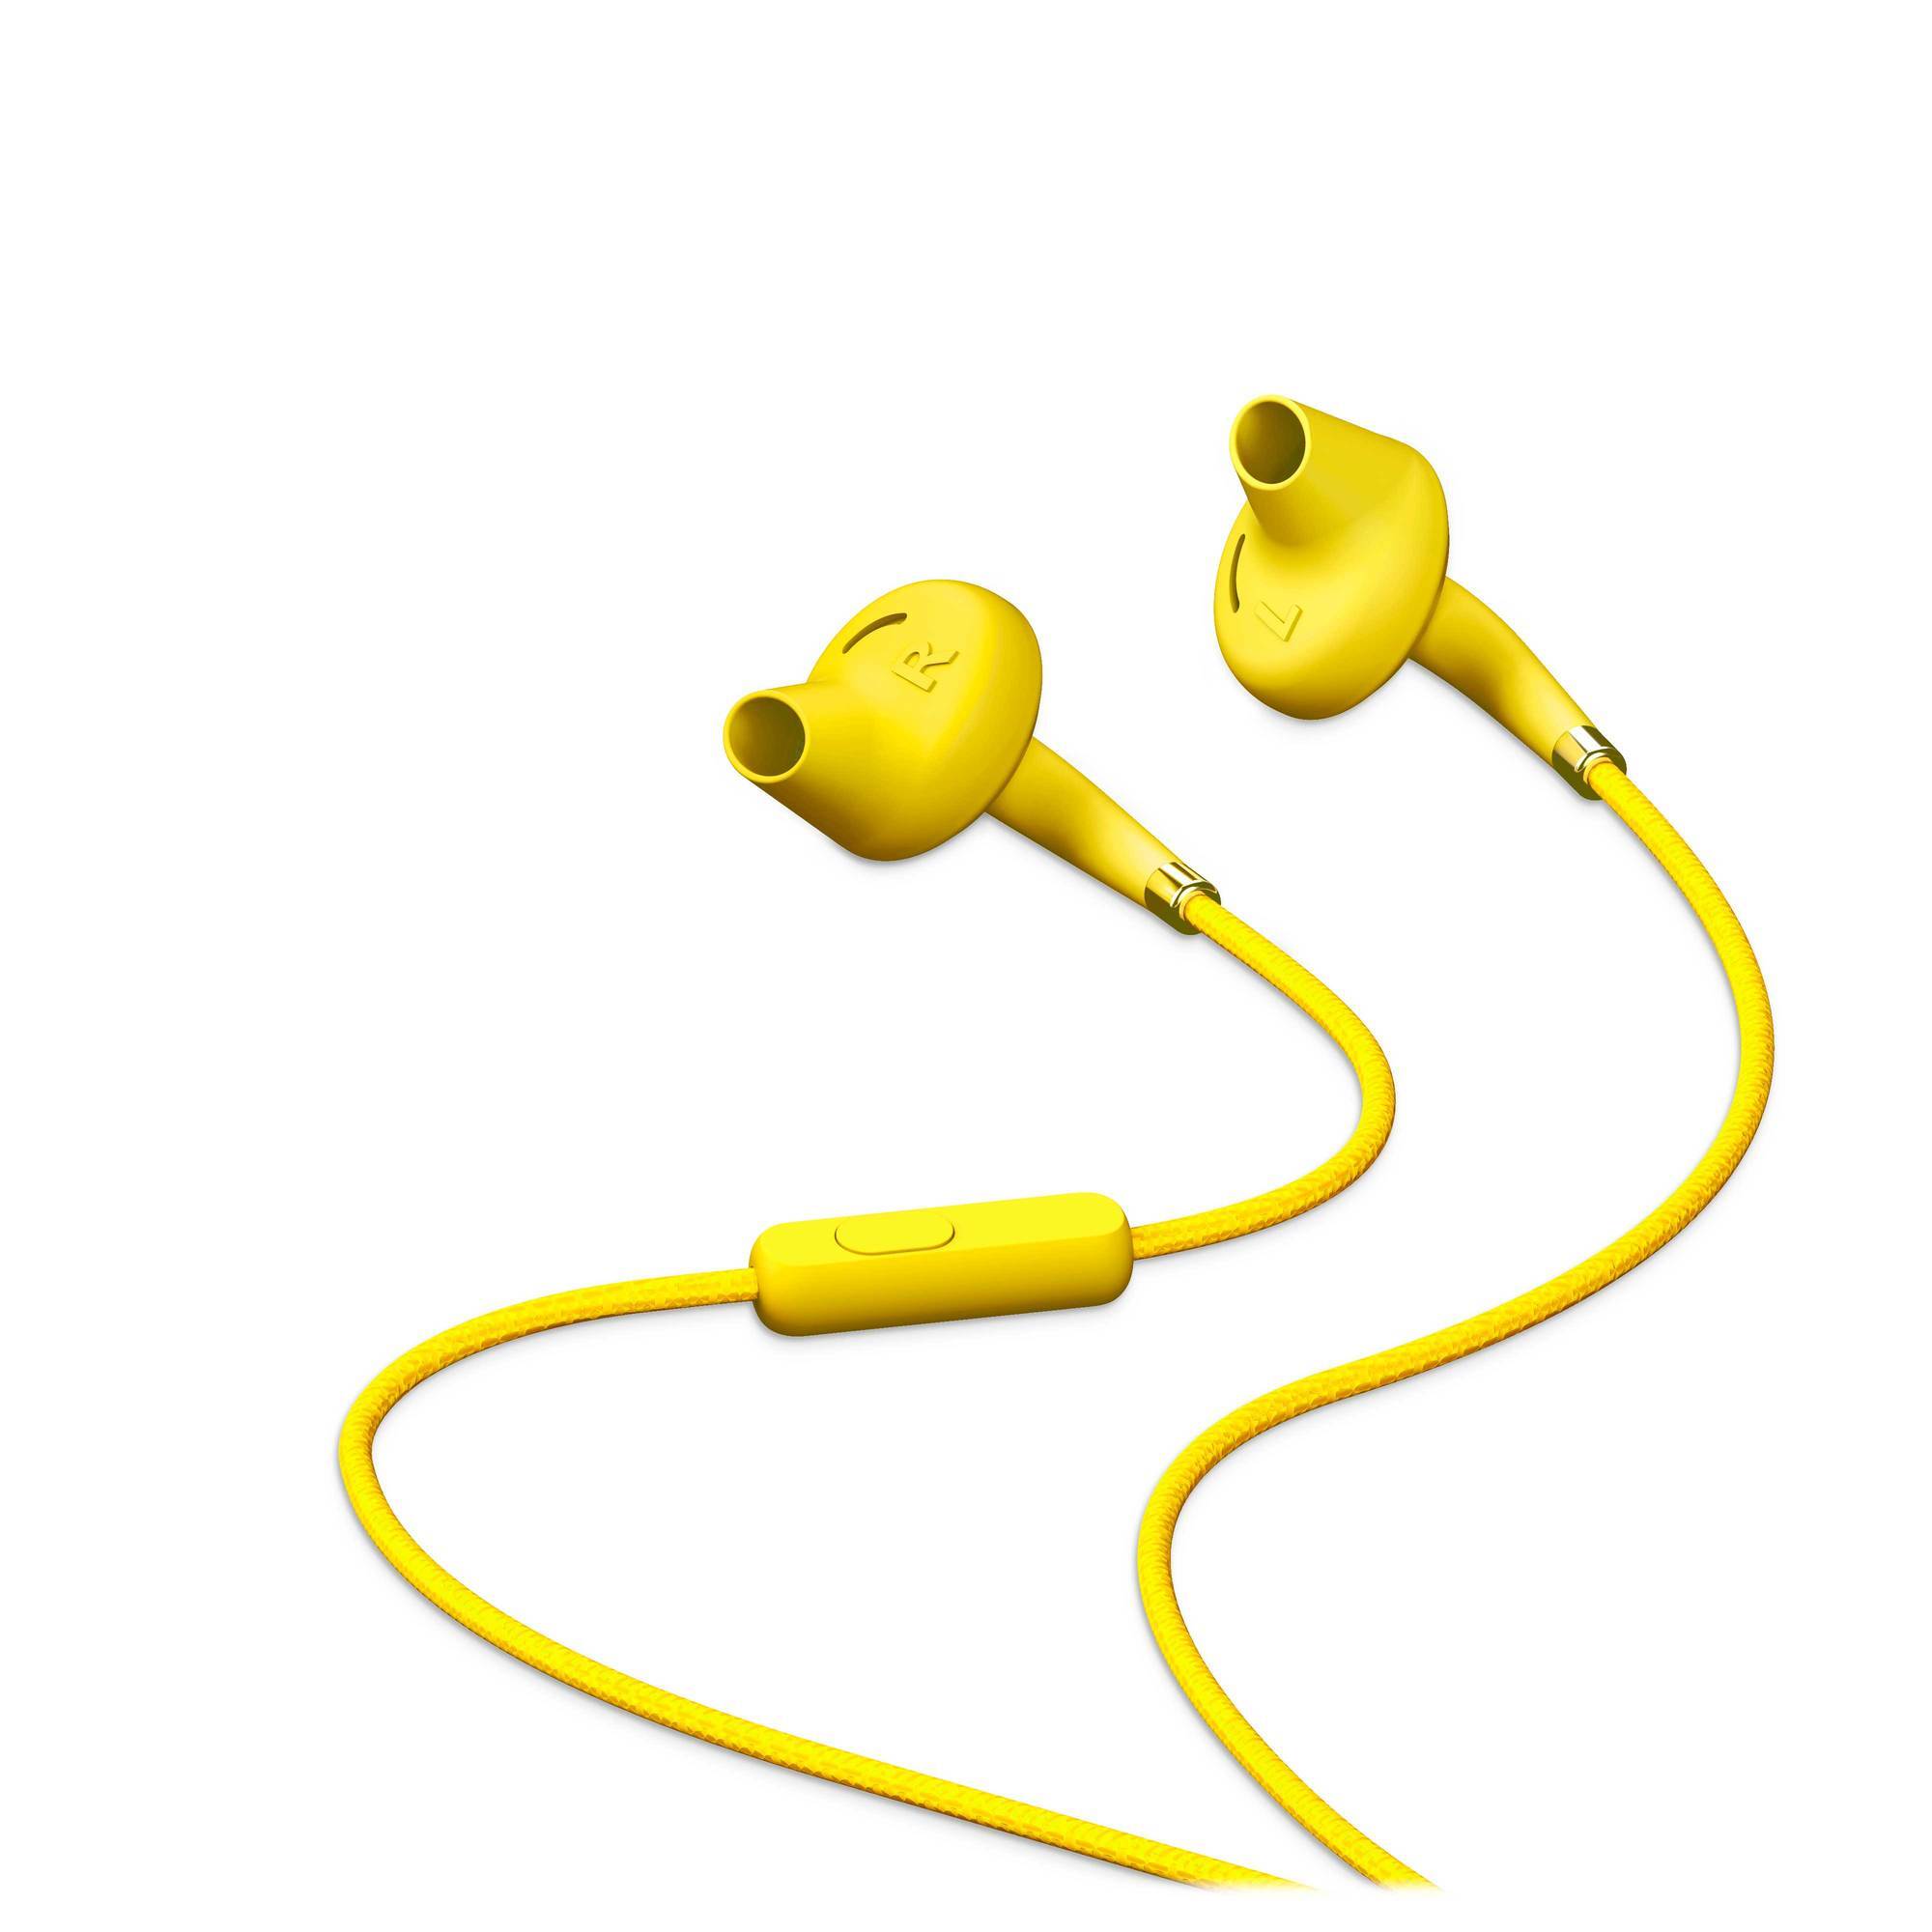 In-ear design earphones for better ergonomics